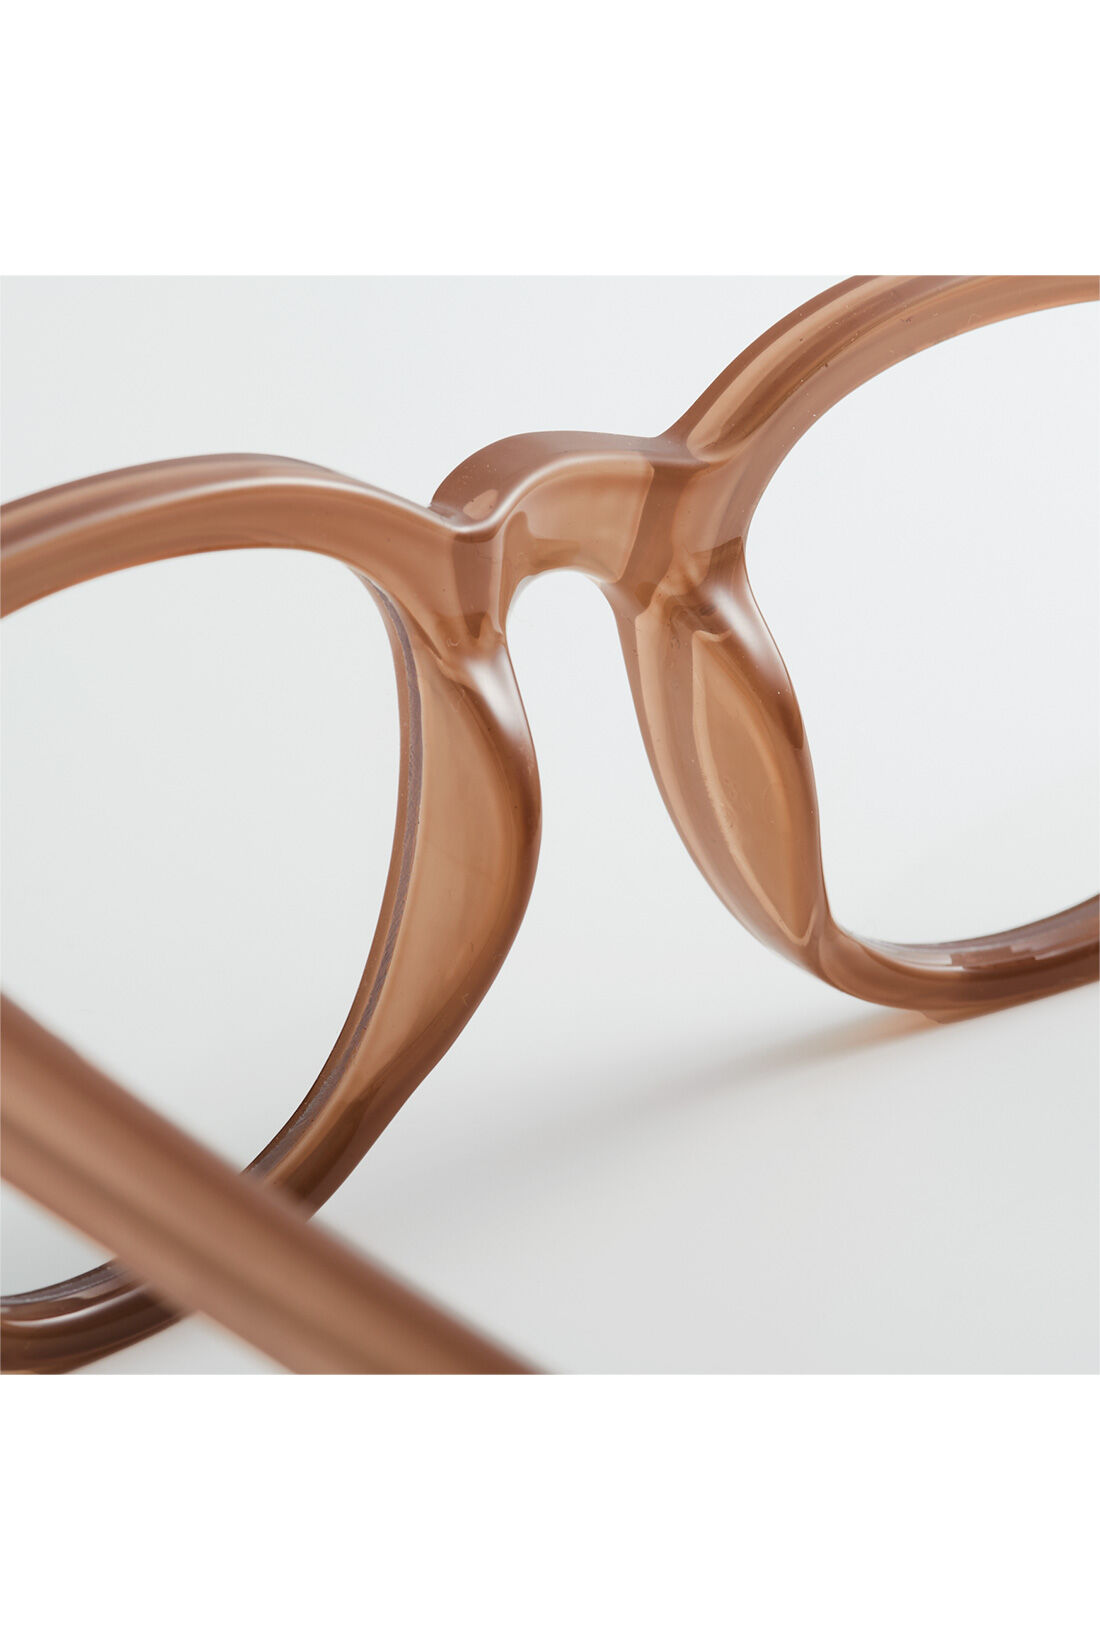 DRECO by IEDIT|【3～10日でお届け】IEDIT[イディット]　小森美穂子さんコラボ　顔まわりを明るく見せる　大人のニュアンスを作れるメガネ〈ベージュ〉|鼻あてはフレームと一体型のスタイリッシュなデザイン。